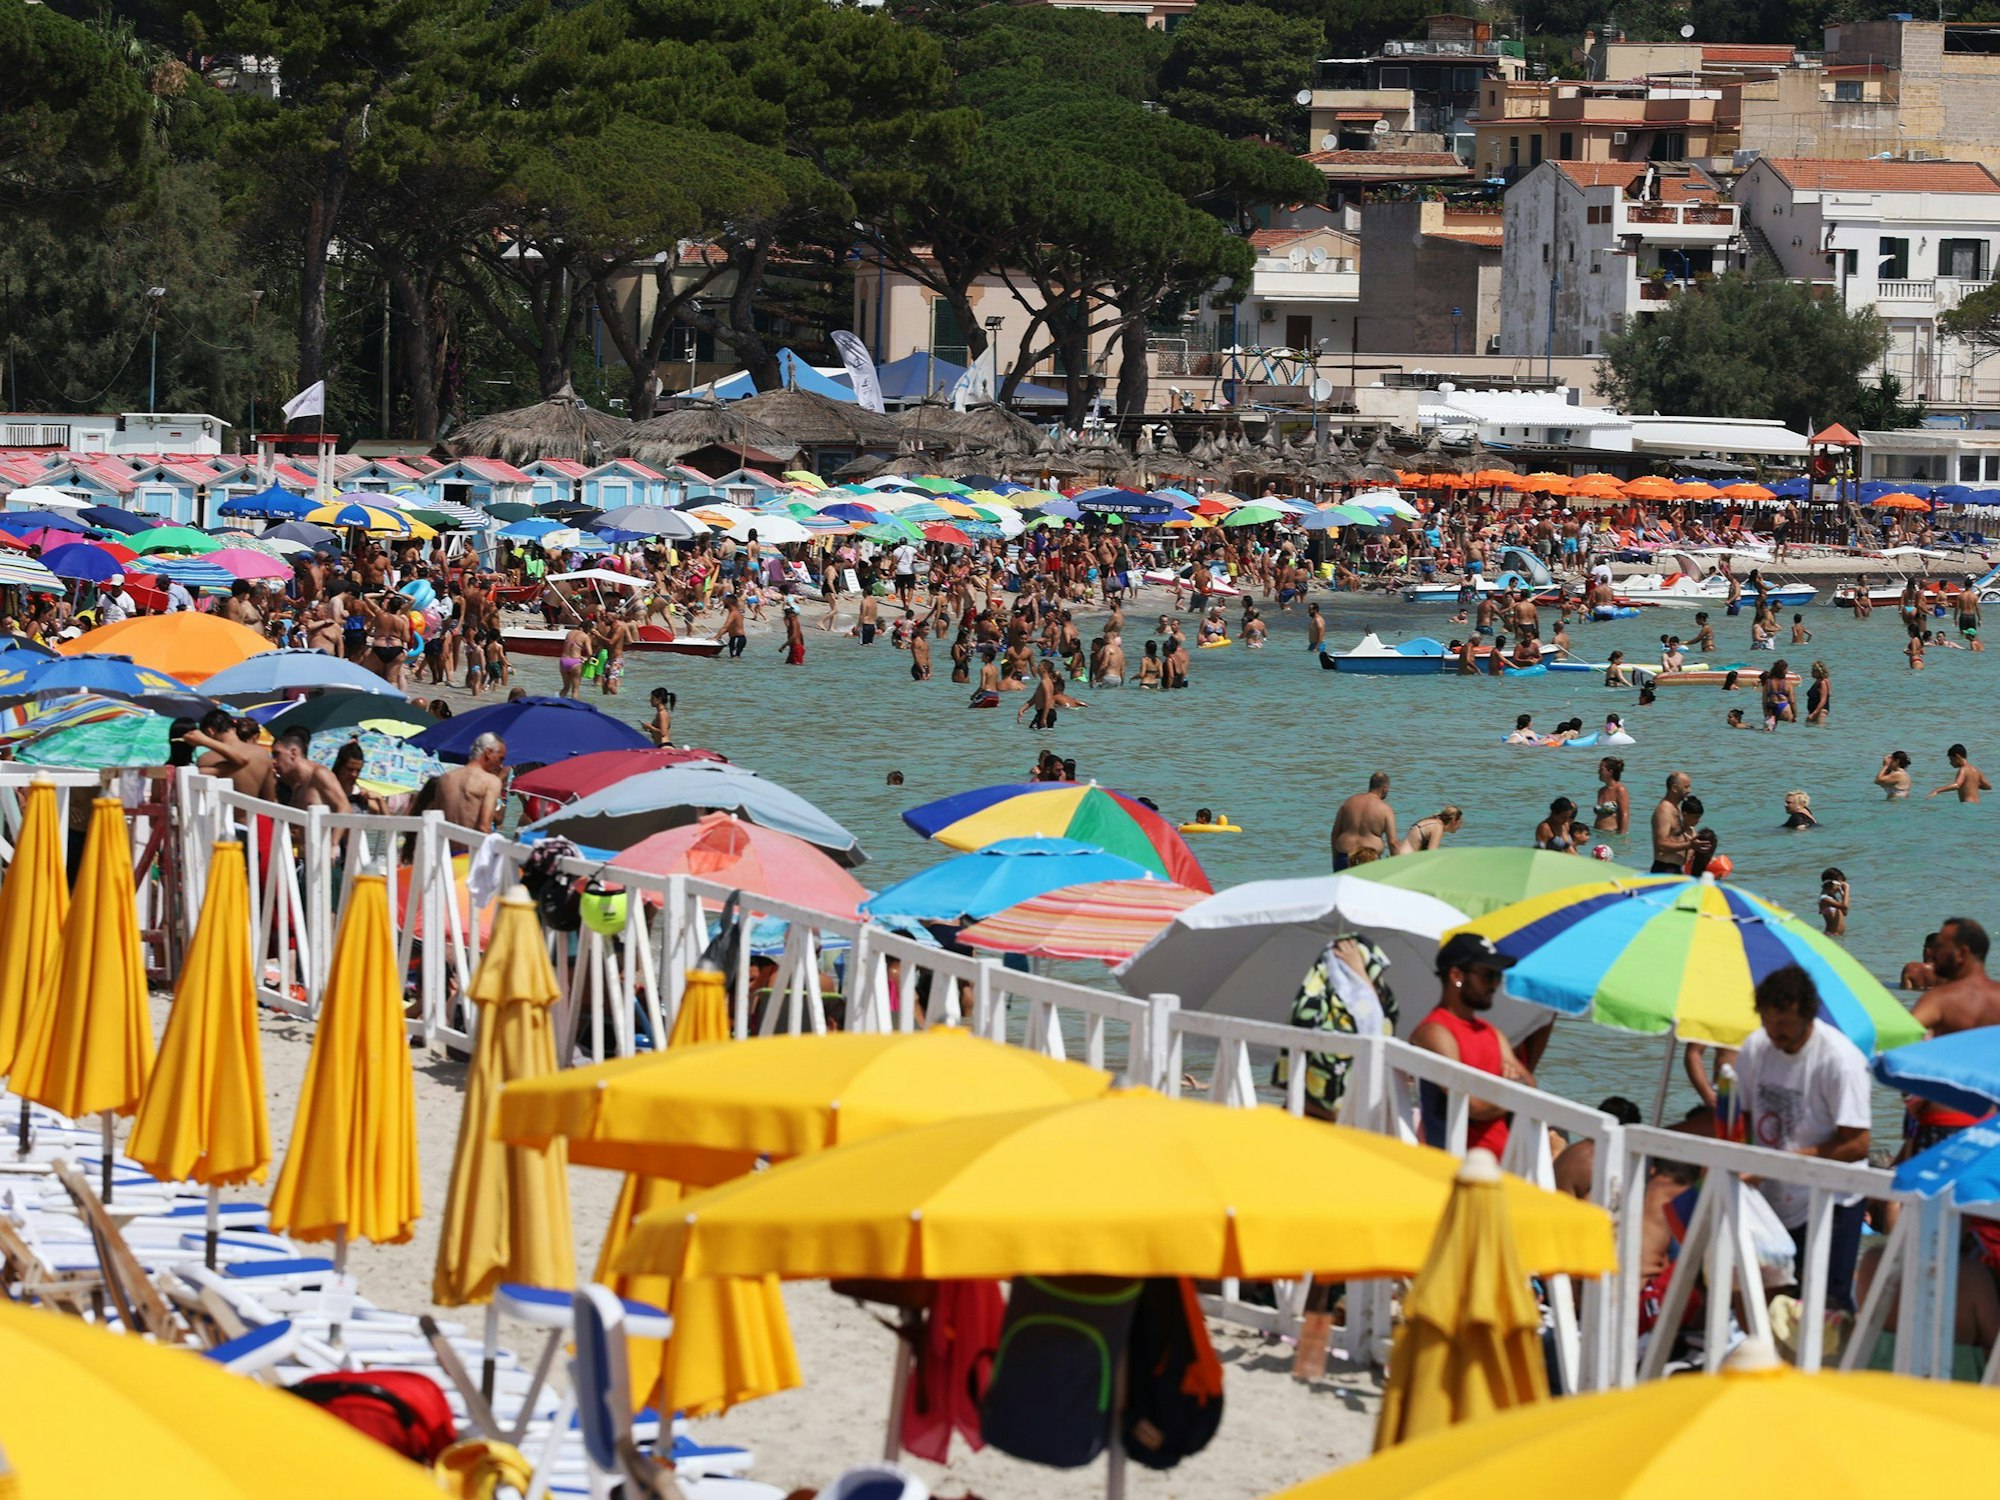 Zahlreiche Menschen sind am Strand in Italien zu sehen. Einige von ihnen baden im Wasser, andere liegen unter gelben Sonnenschirmen.